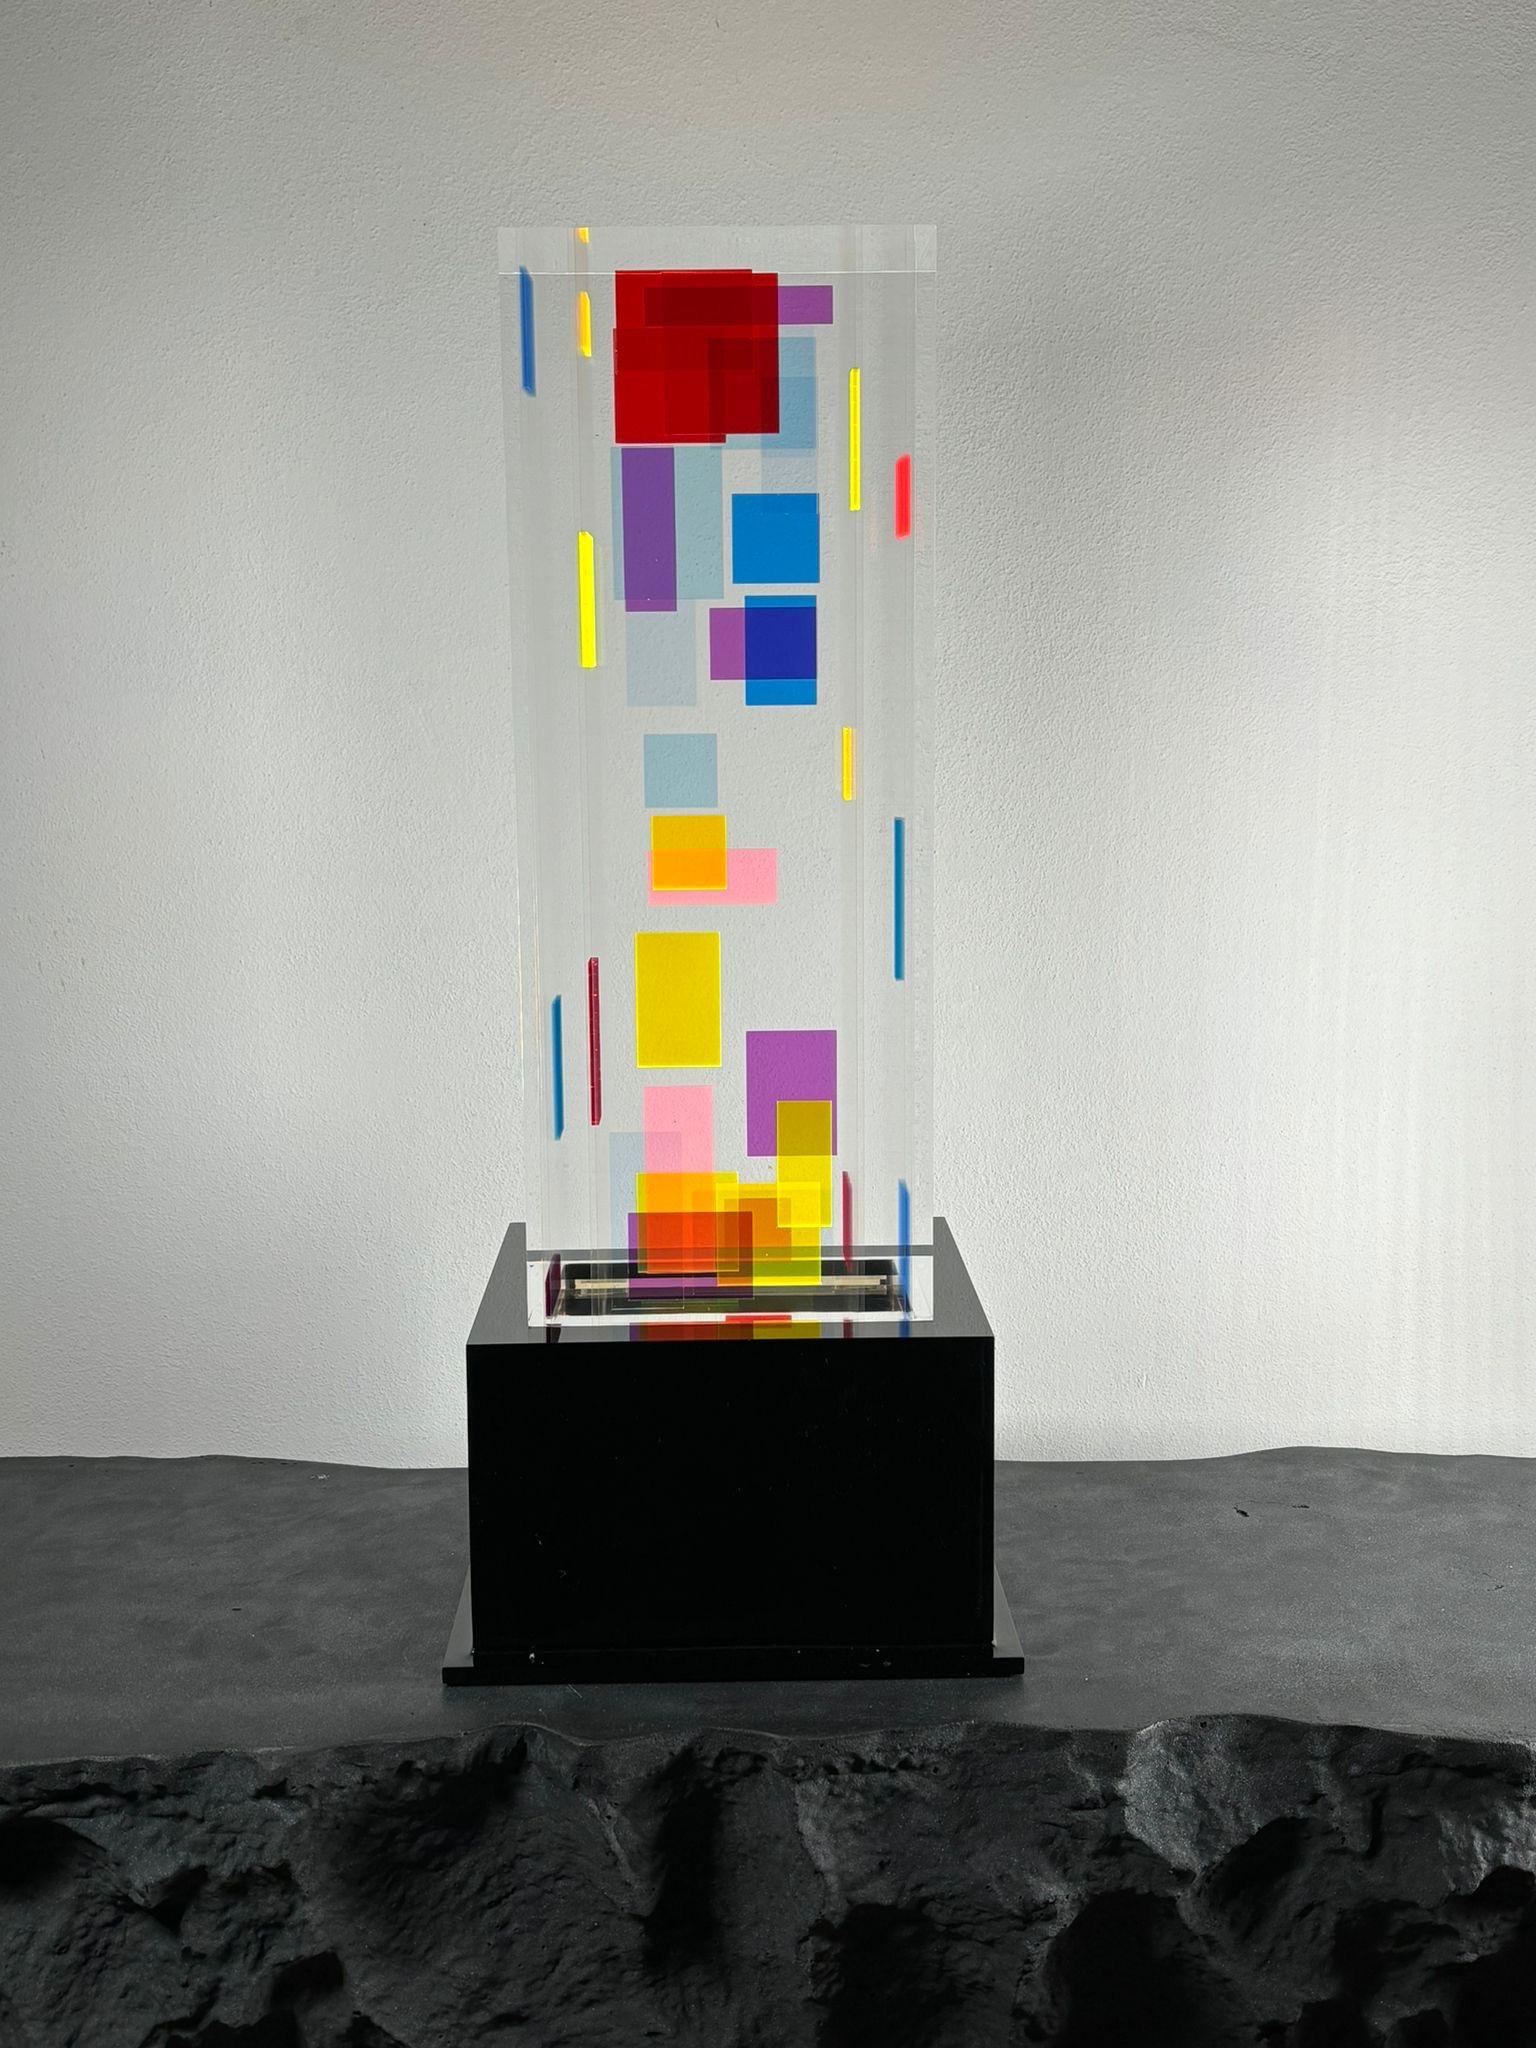 Tischleuchte Plexiglas Modell DNA entworfen von Studio Superego für Superego Editions. 
 
Biografie
Superego editions wurde 2006 gegründet und führt eine konstante Forschungstätigkeit im Bereich der dekorativen Kunst durch, indem es sowohl